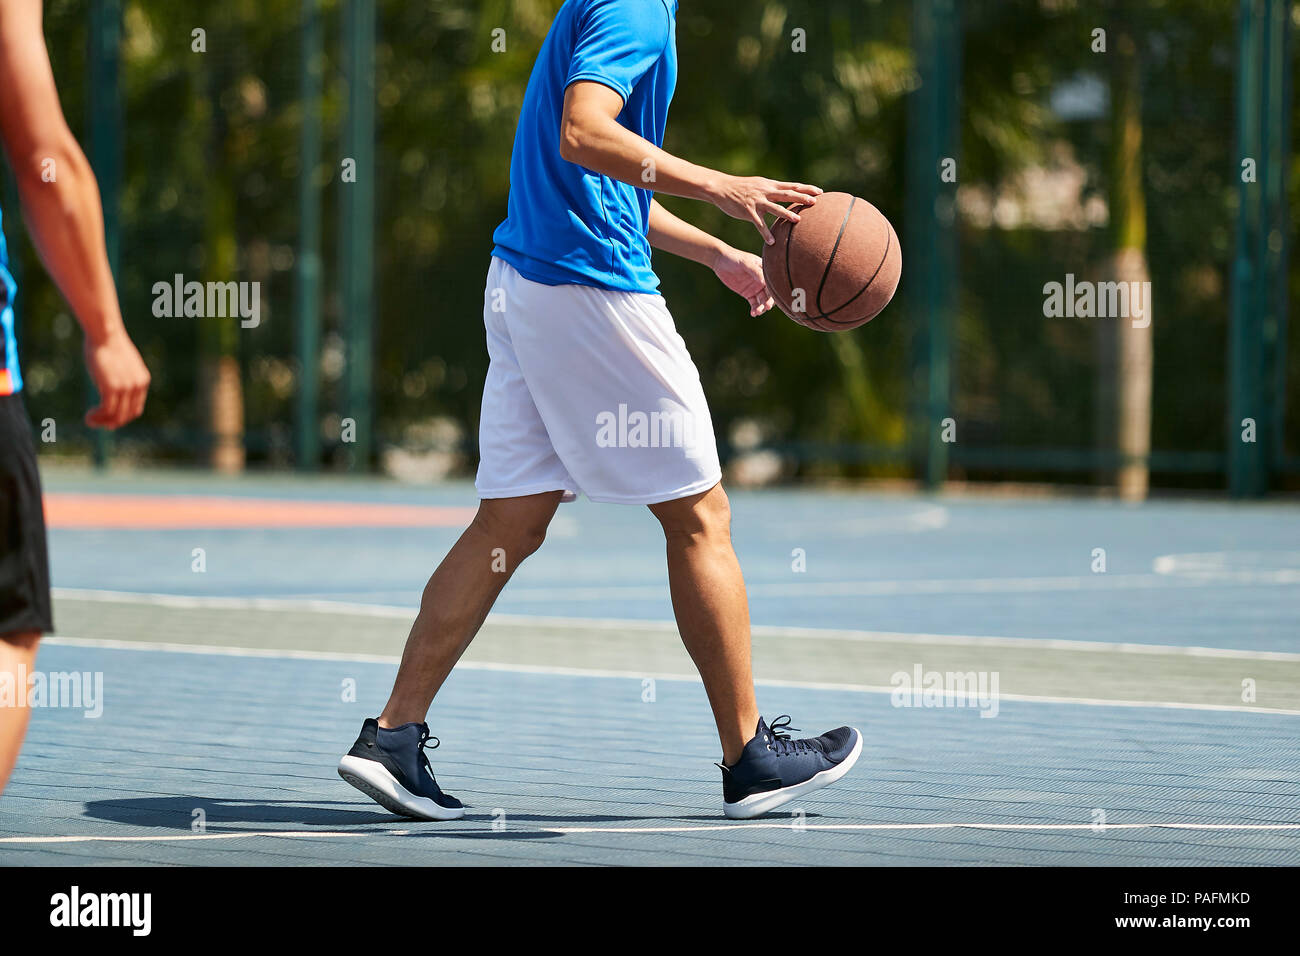 Les jeunes adultes asiatiques jouant au basket-ball à l'extérieur sur cour Banque D'Images